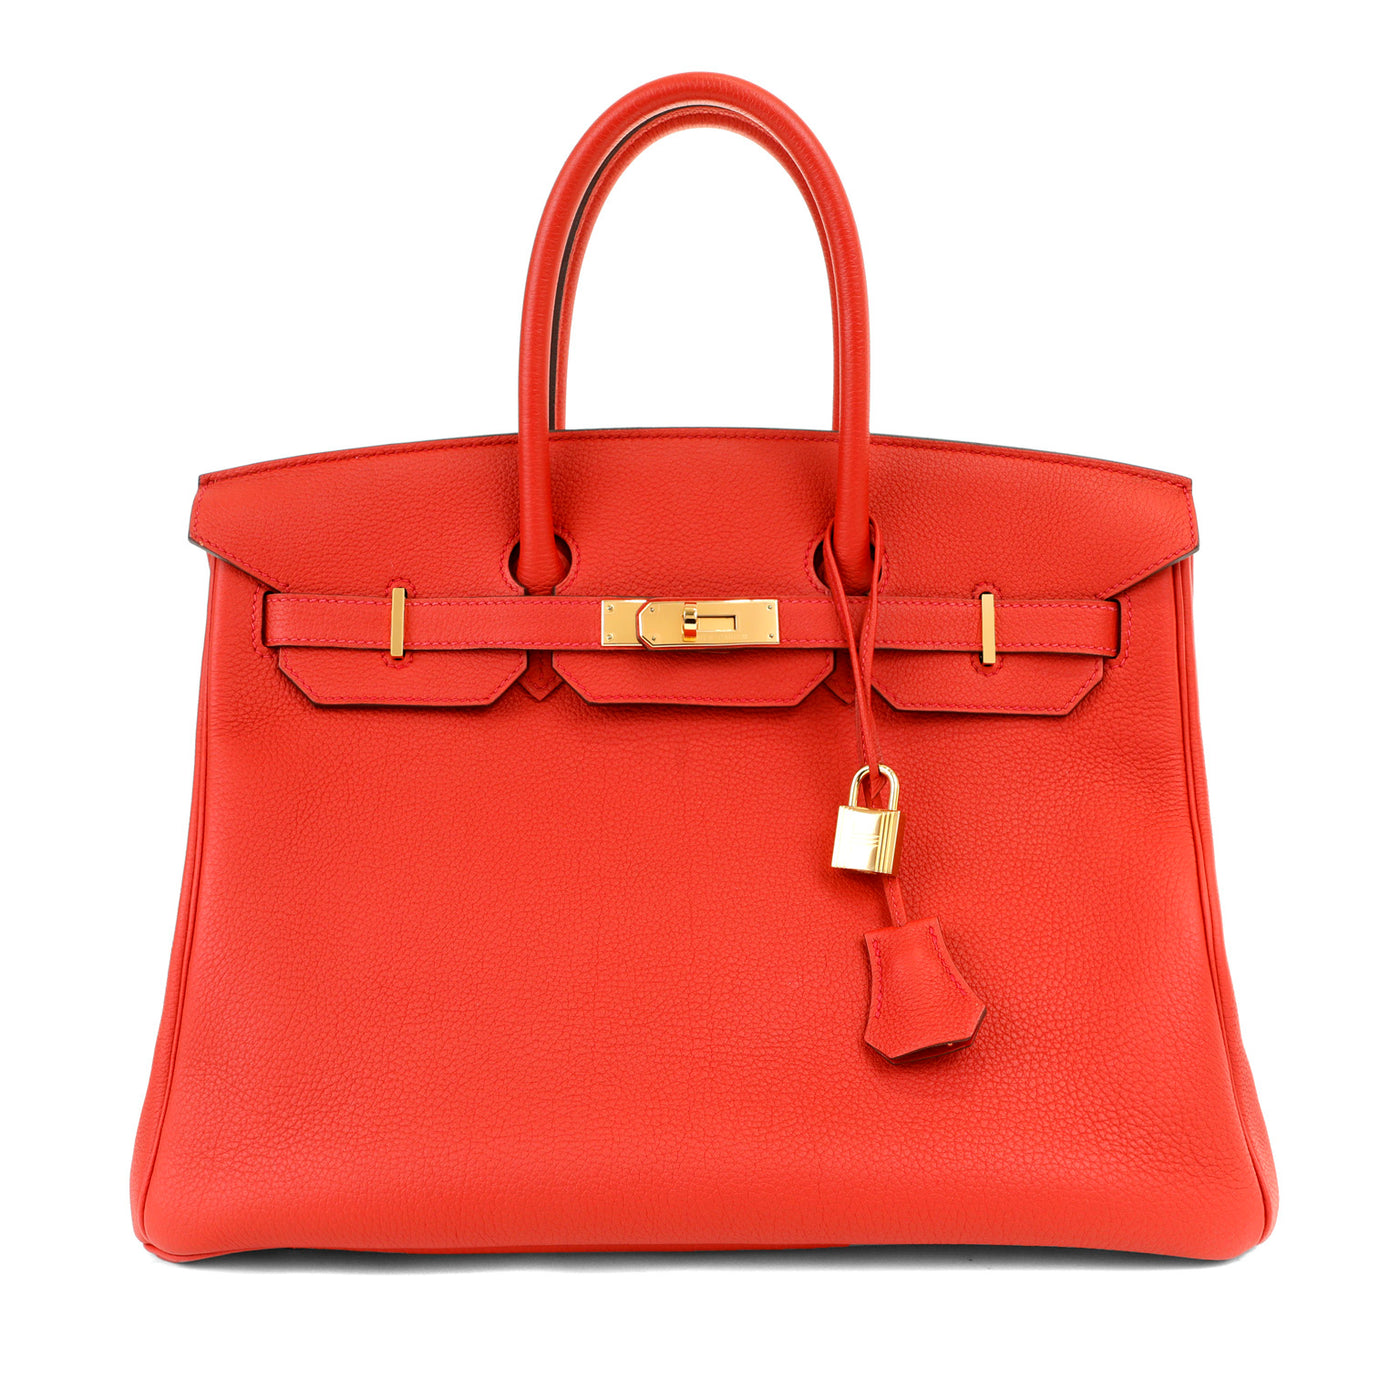 This pristine unworn red Togo Birkin bag by Hermès is a true luxury masterpiece